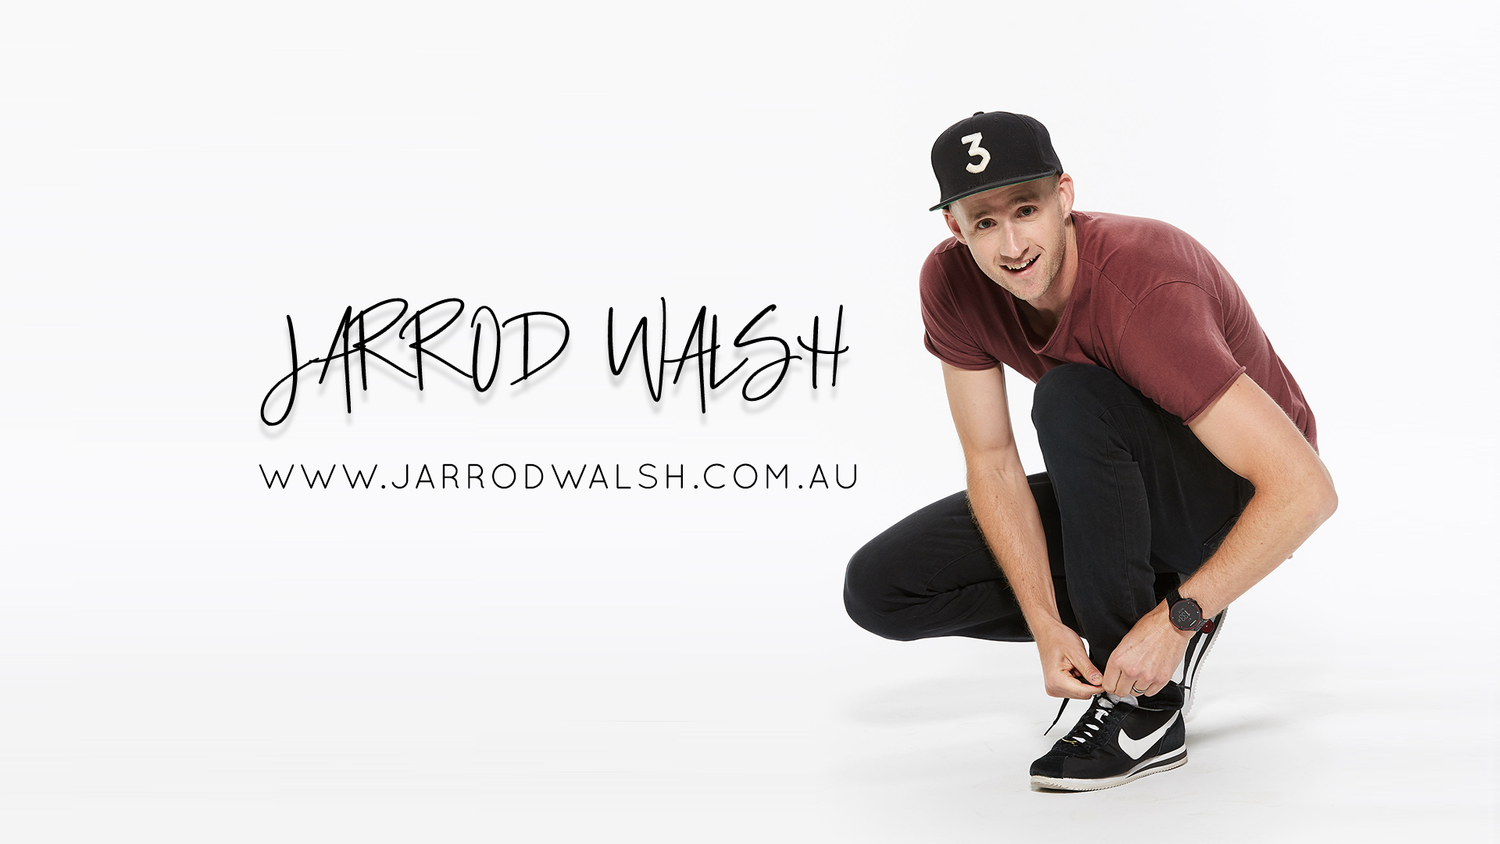 www.jarrodwalsh.com.au